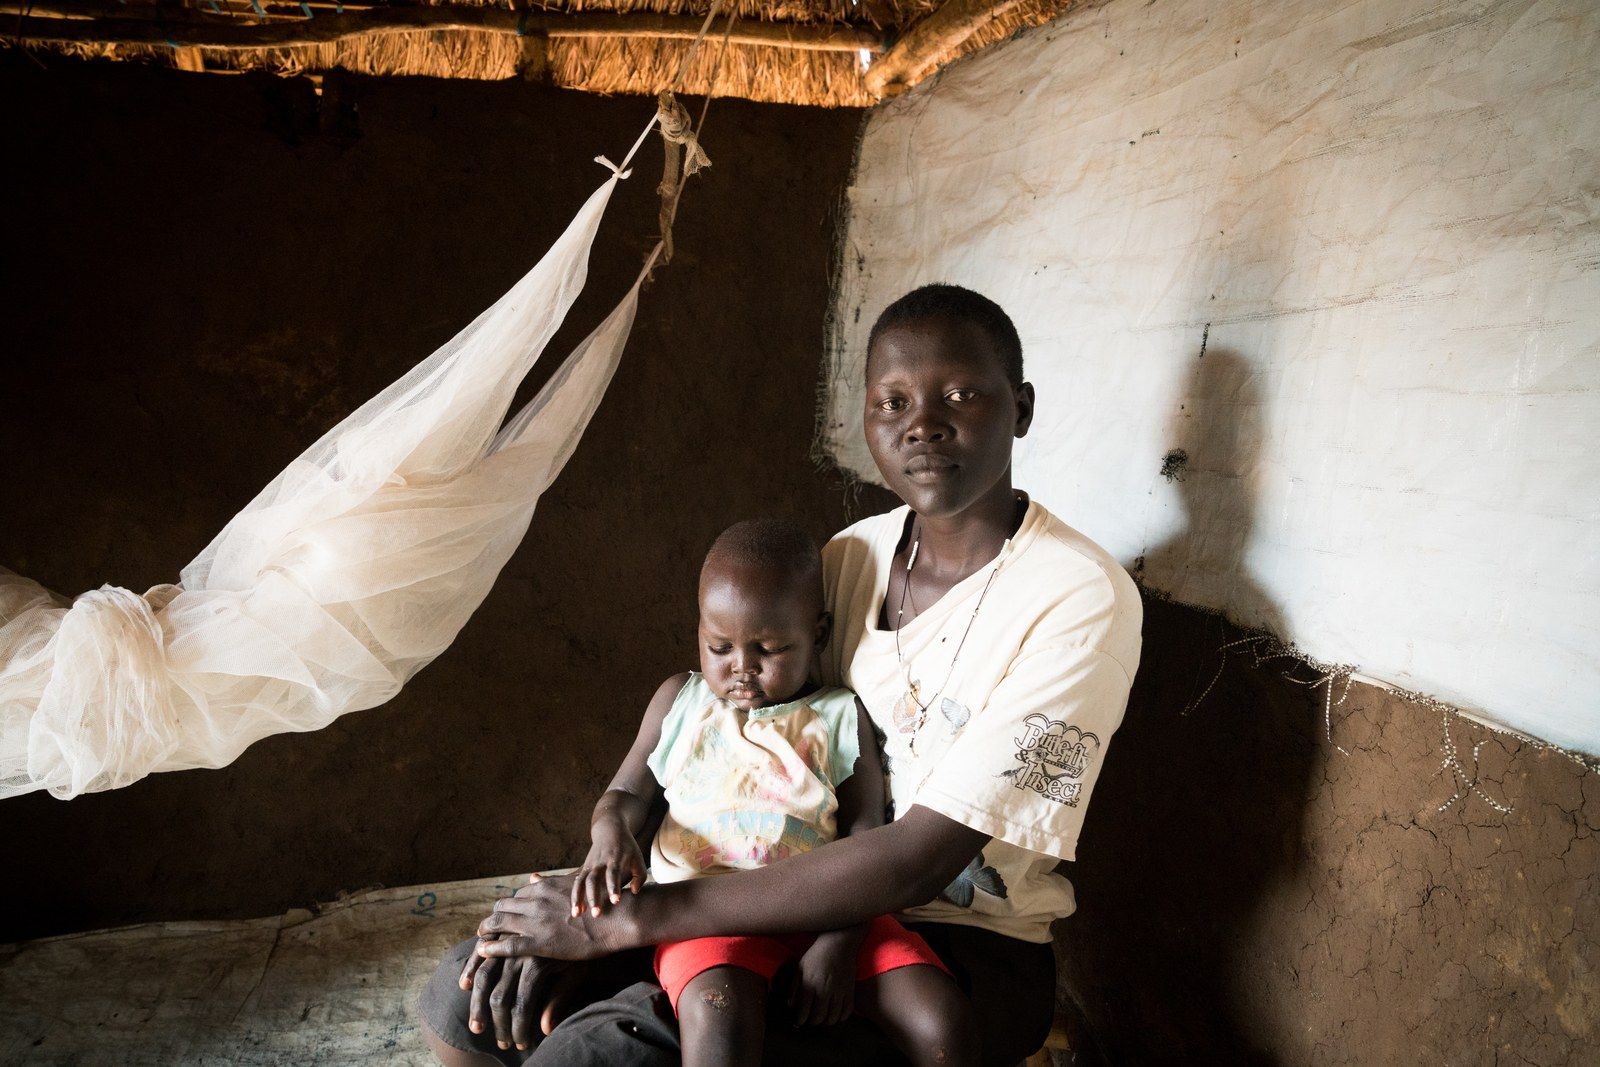 Helen Keji, 19, with her son Nicholas, 2, in their home in the Bidi Bidi settlement, June 26, 2019. Image by Adriane Ohanesian. Uganda, 2019.